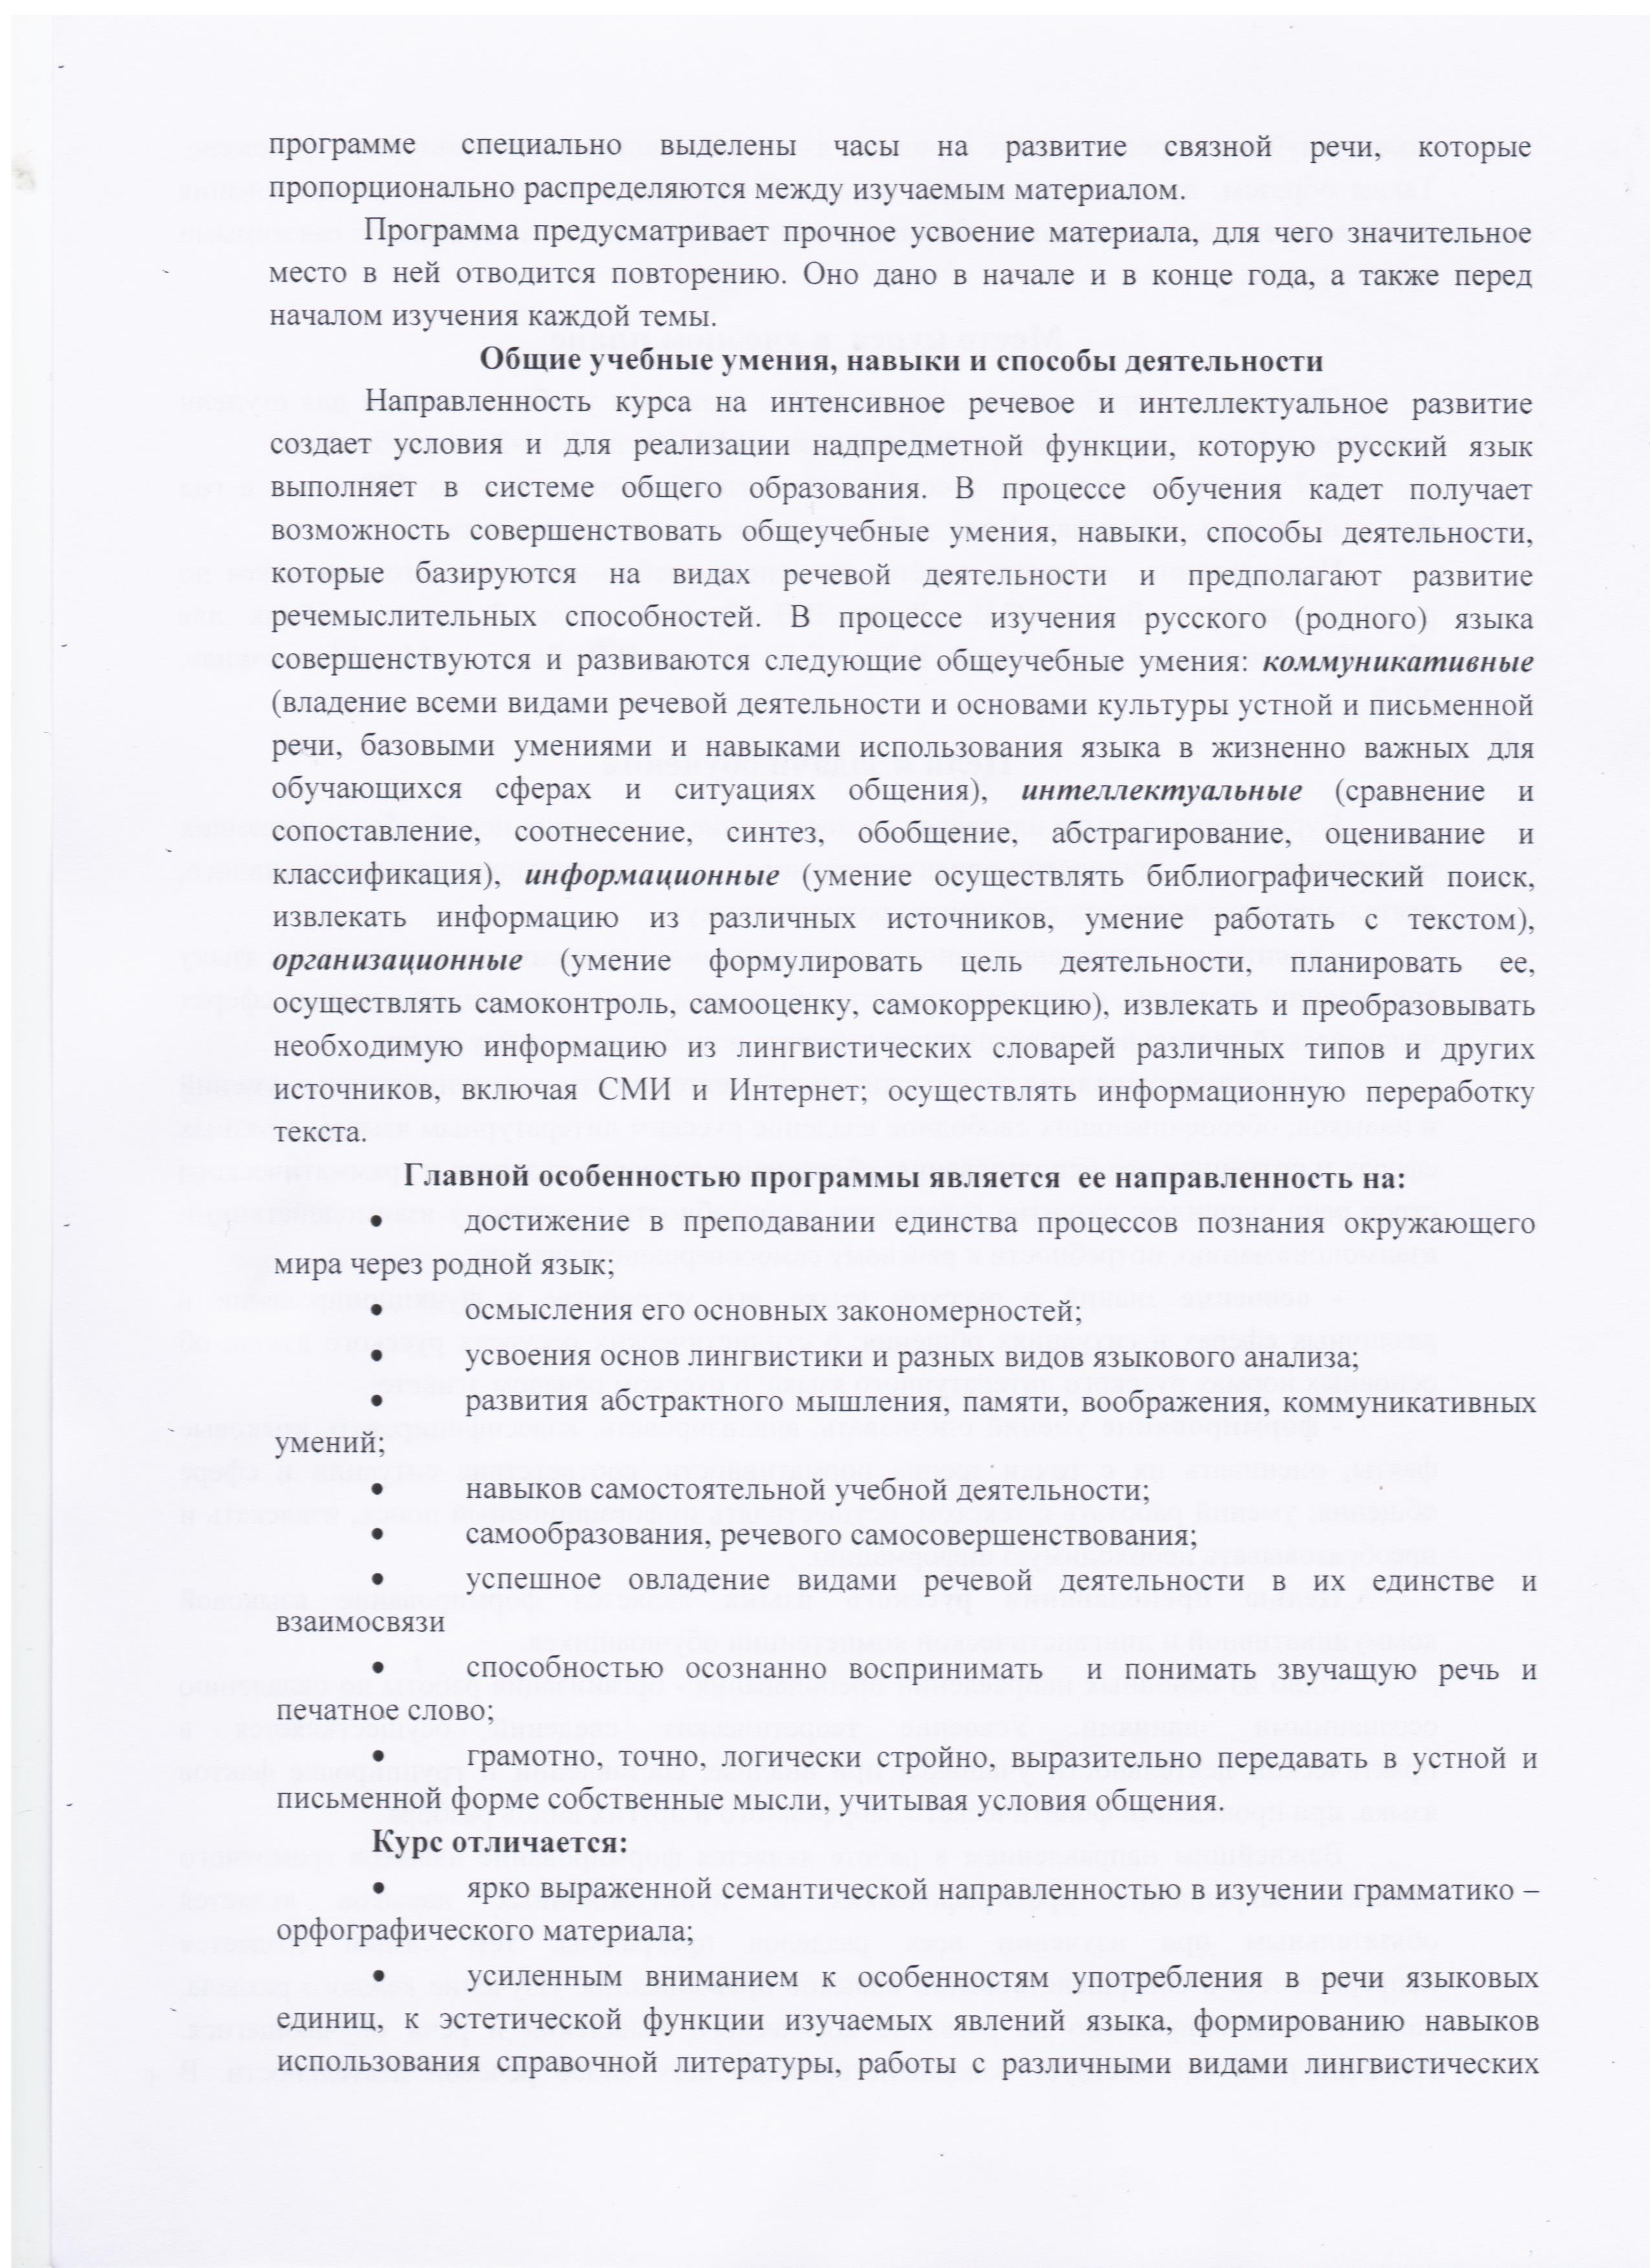 Пояснительная записка к рабочей программе по русскому языку 7 класс